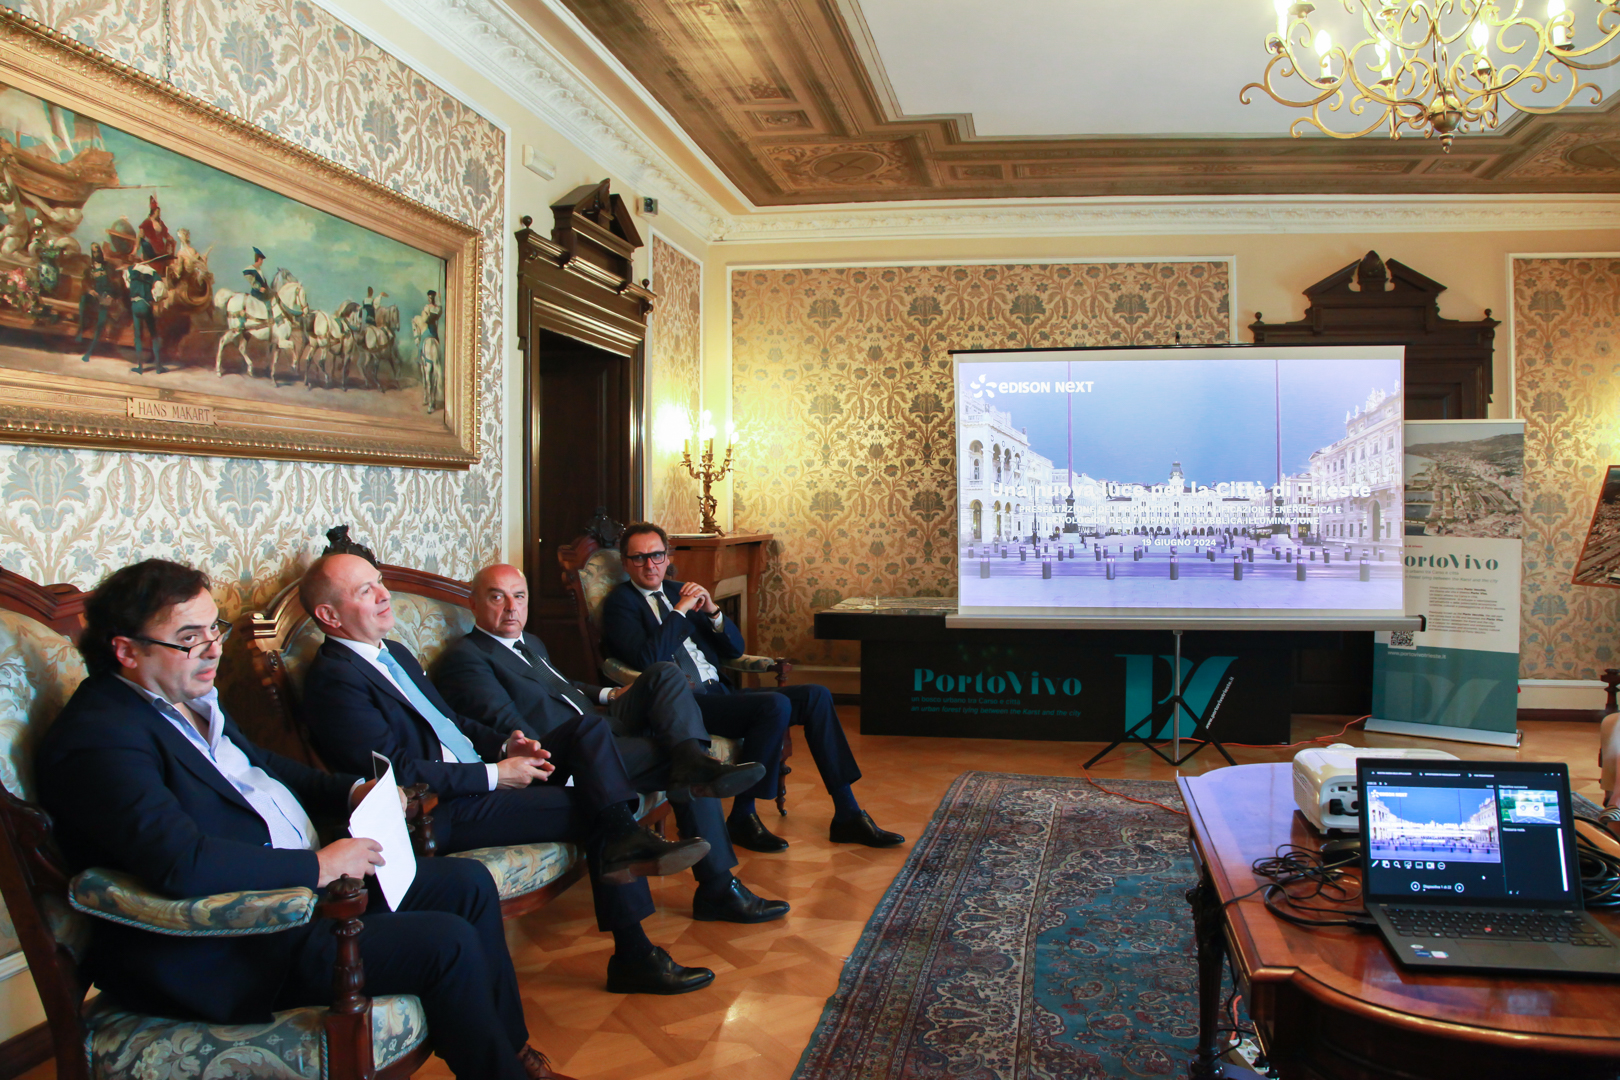 Salotto azzurro: presentazione del progetto "illuminazione pubblica" a Trieste -Edison